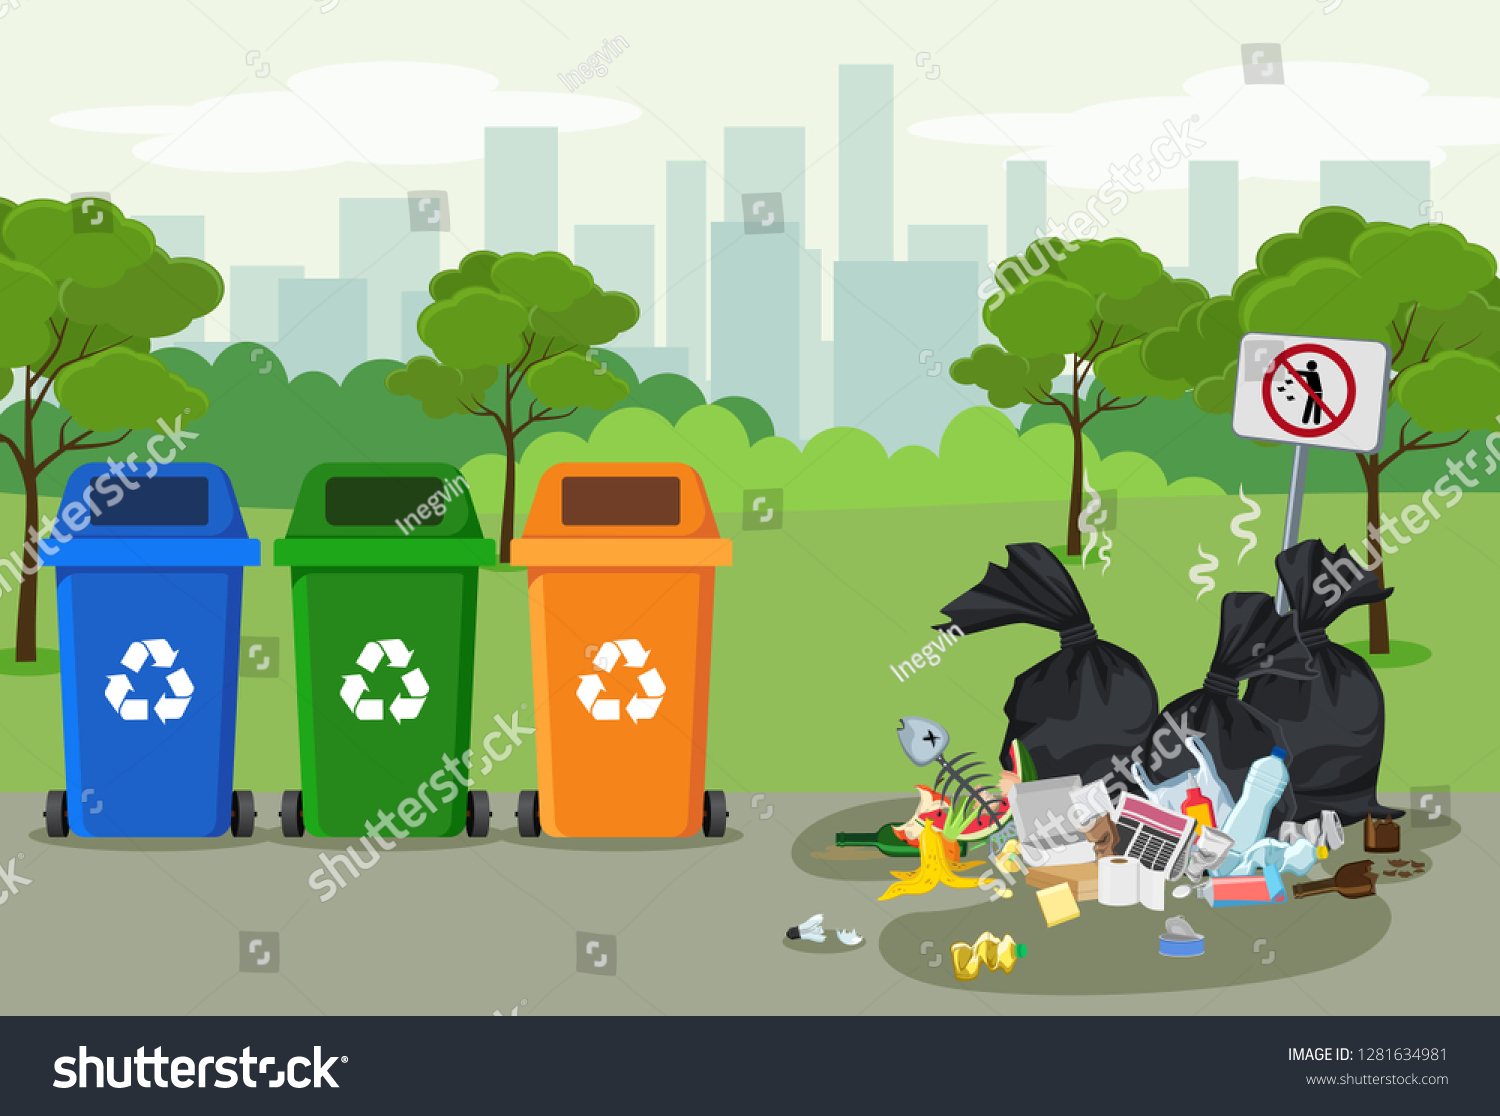 Утилизация мусора для детей